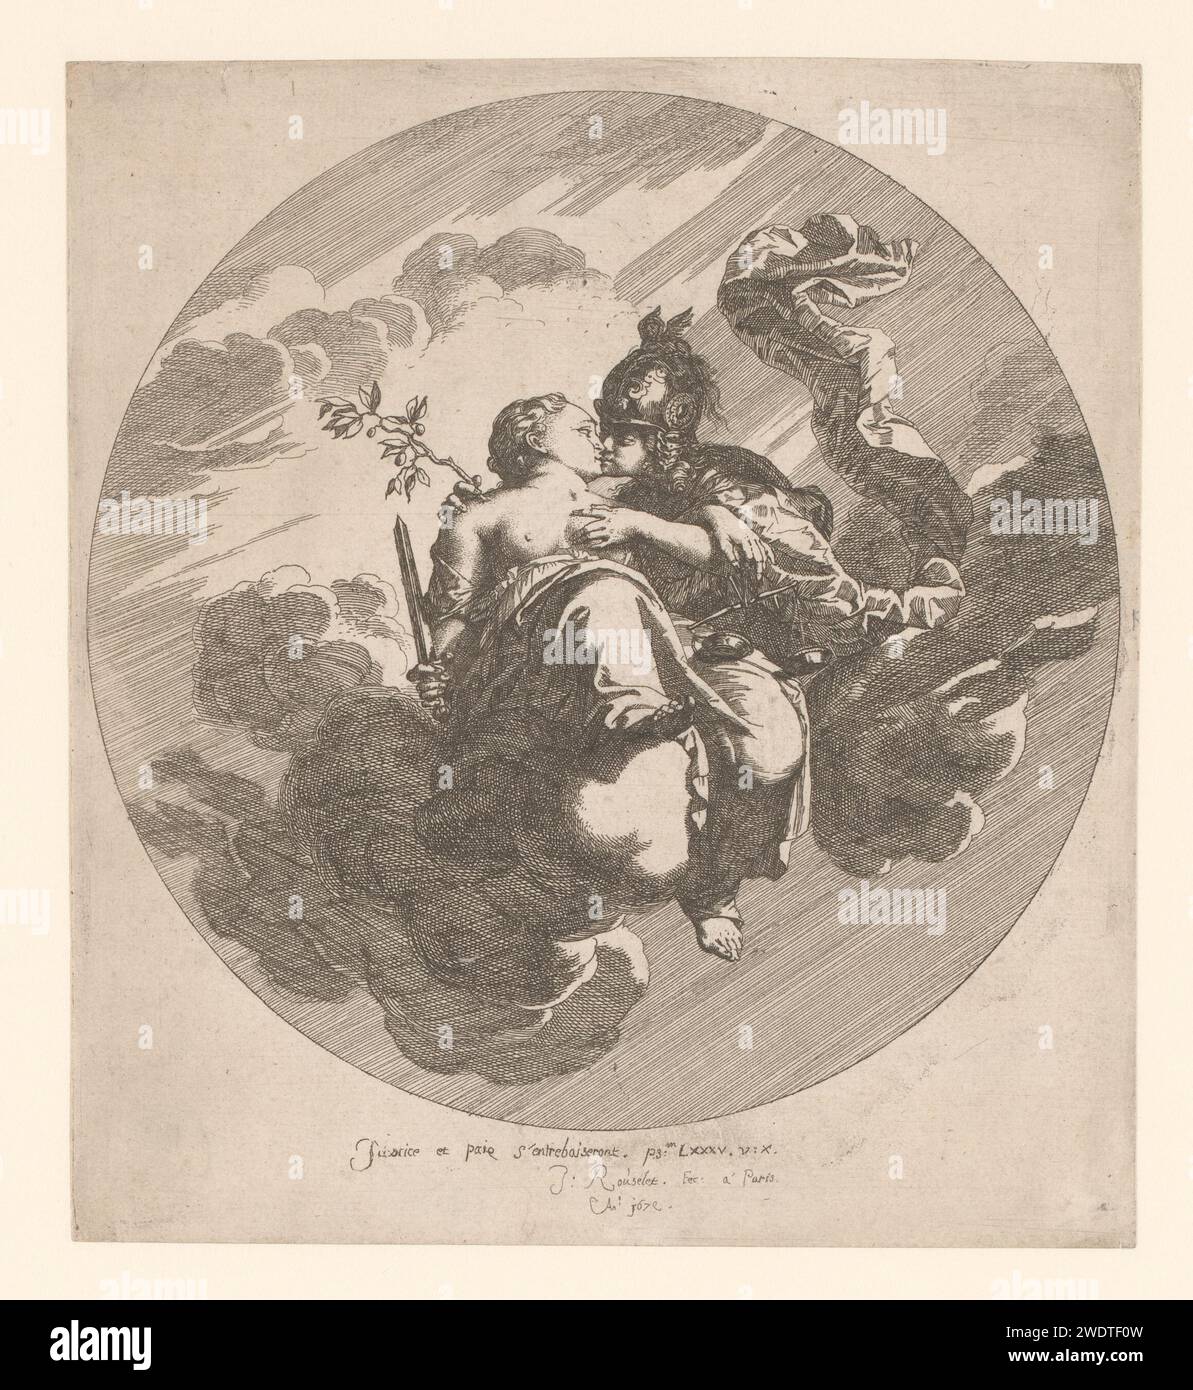 Pax e Justitia in abbraccio, seduti sulle nuvole, Gilles Rousselet, stampa del 1679 Paris paper etching Justice, "Justitia"; "Giustitia divina" (Ripa)  una delle quattro virtù cardinali. Simboli, allegorie della pace, "Pax"; "Pace" (Ripa) Foto Stock